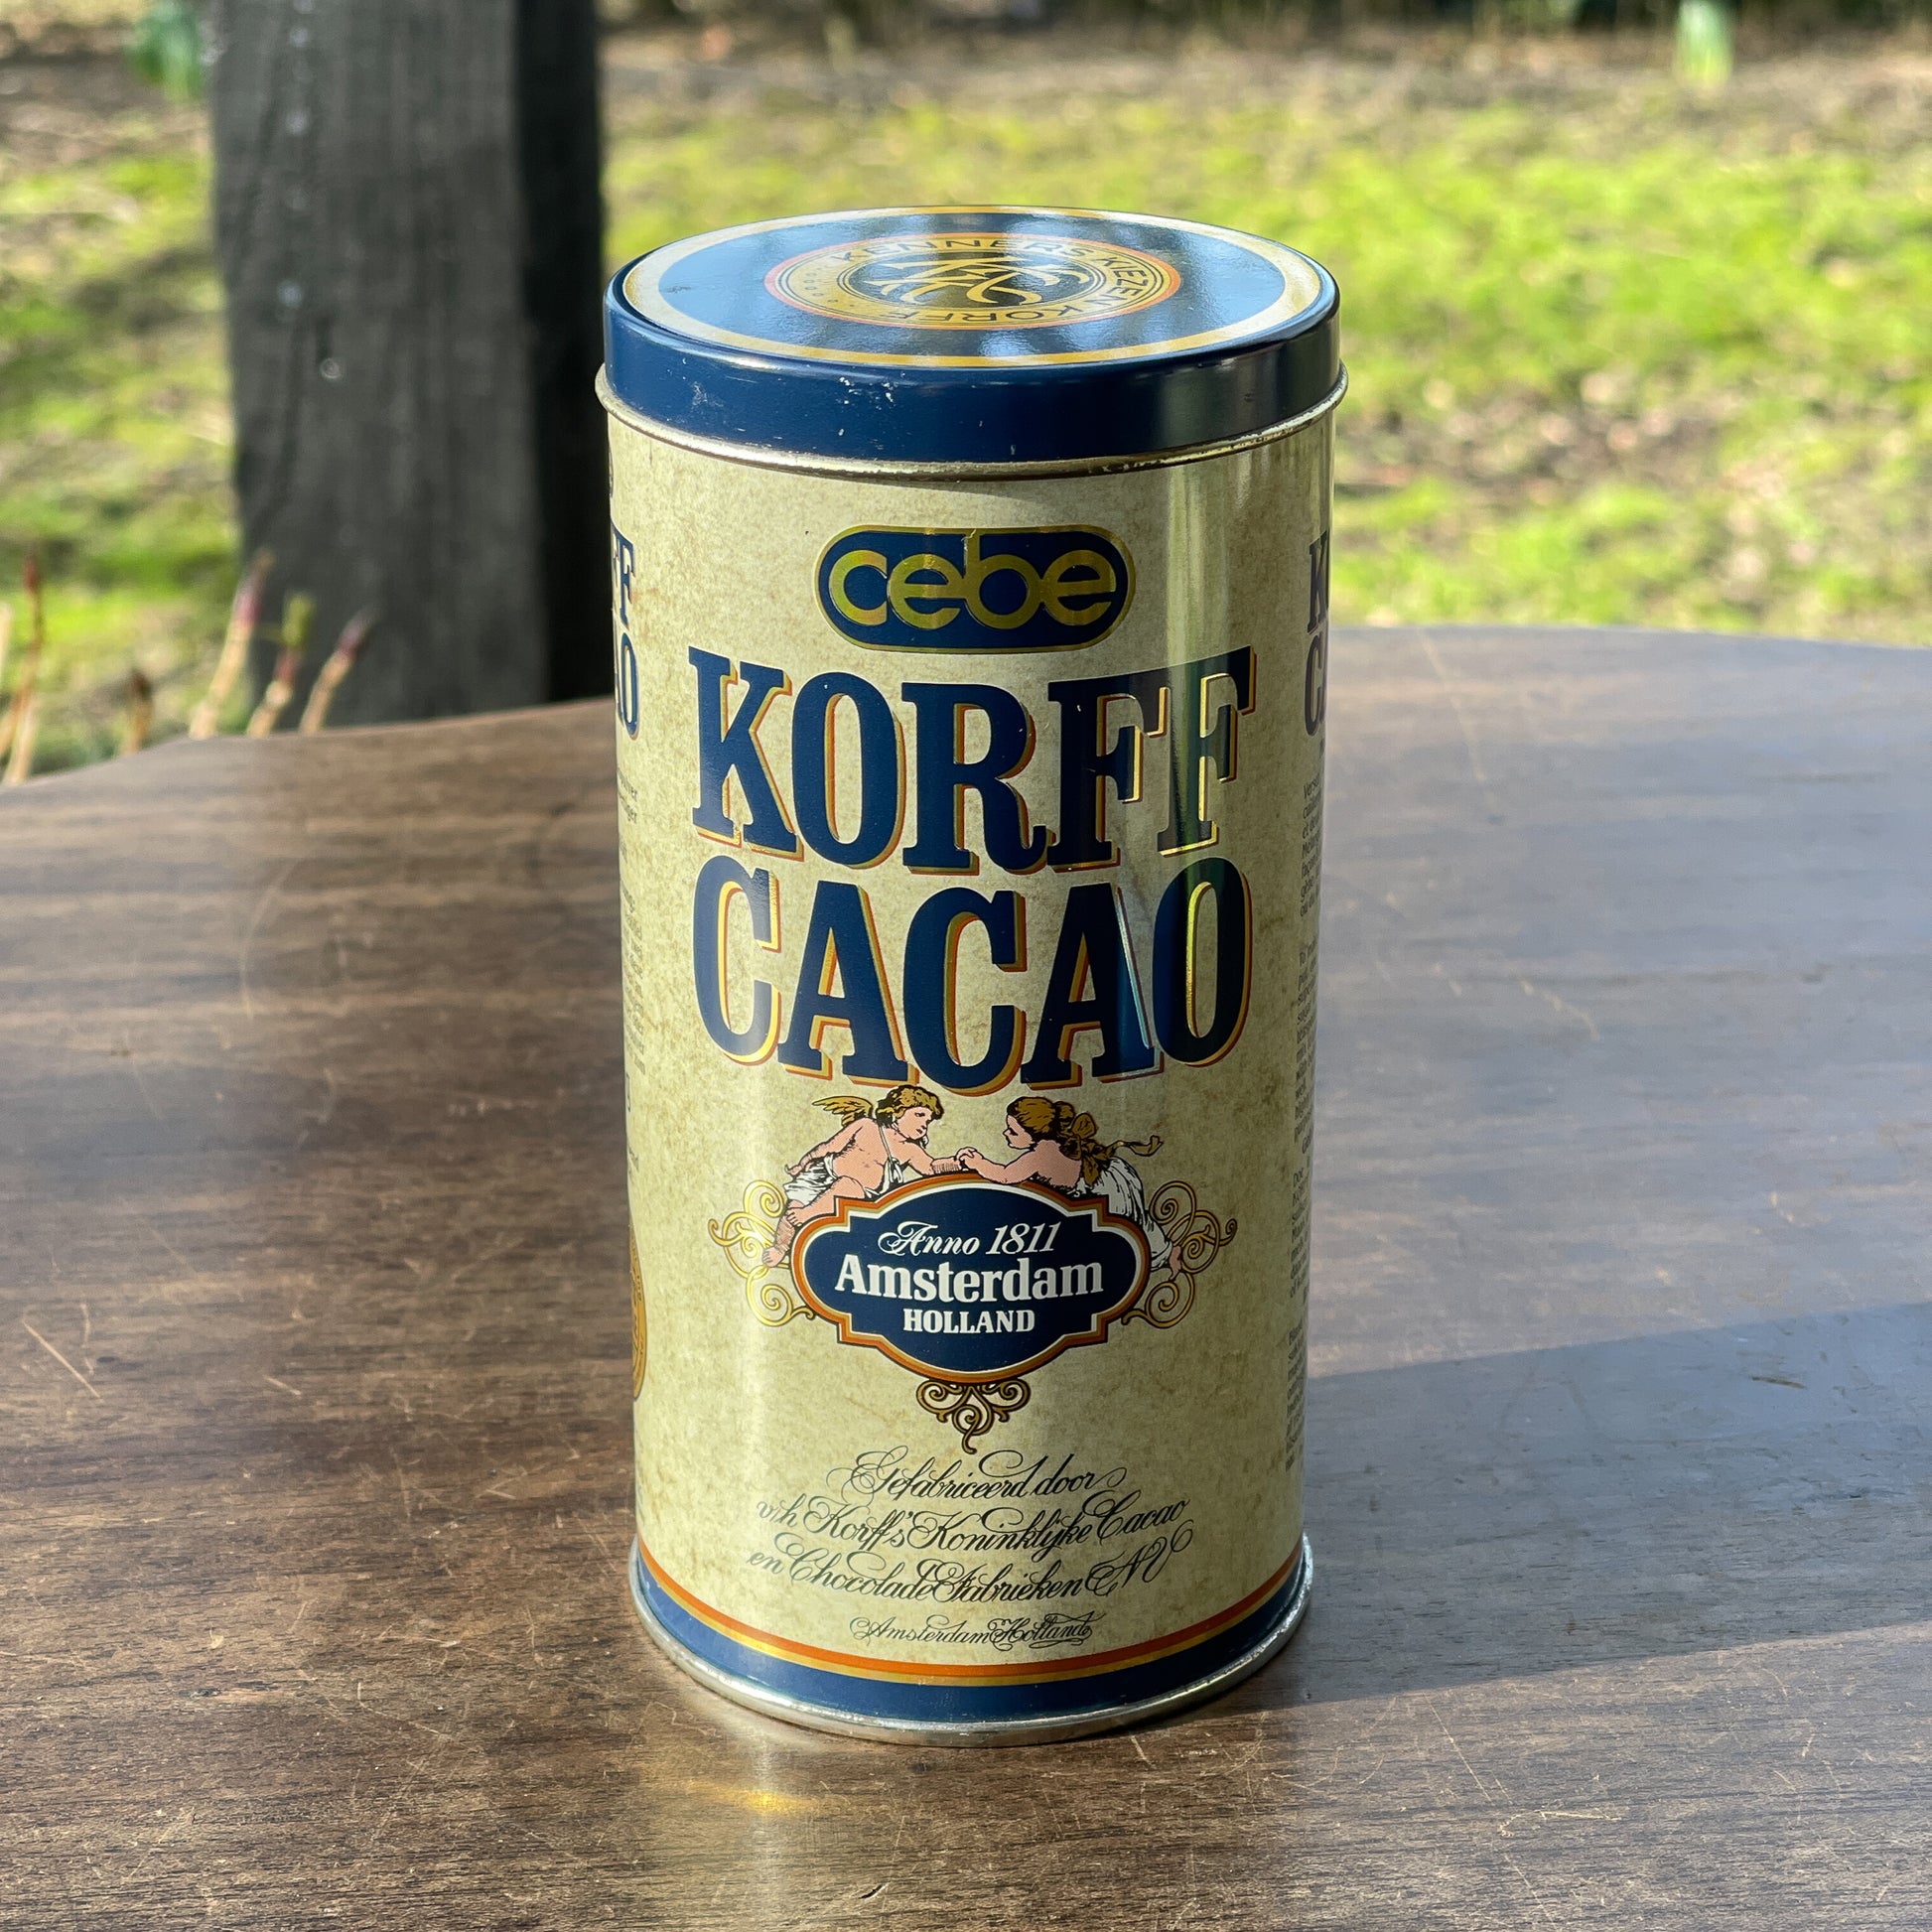 Korff Cacao Blik - Bamestra Curiosa